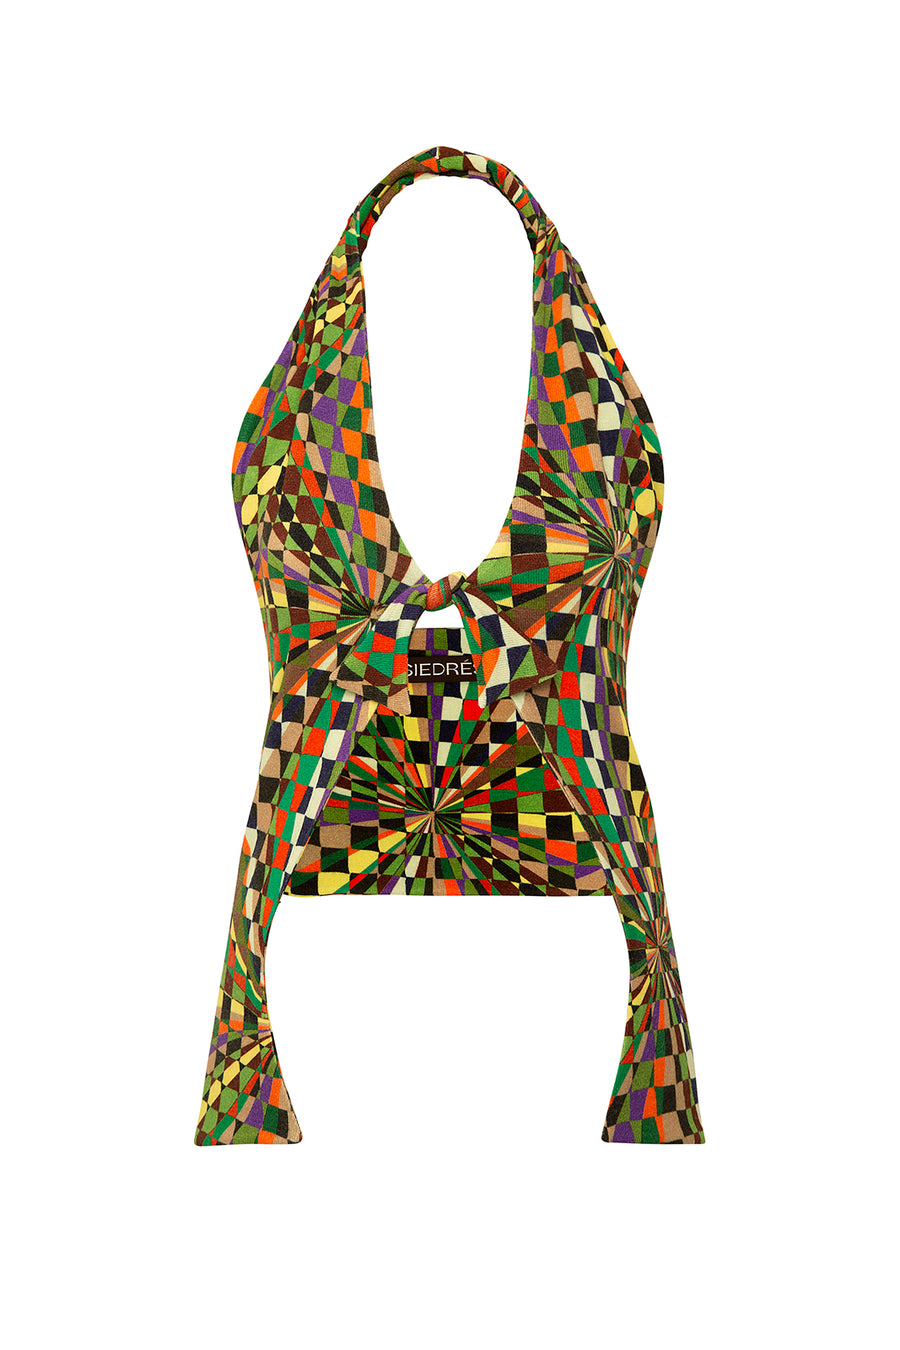 DYLAN - Kaleidoscope printed knit halter vest